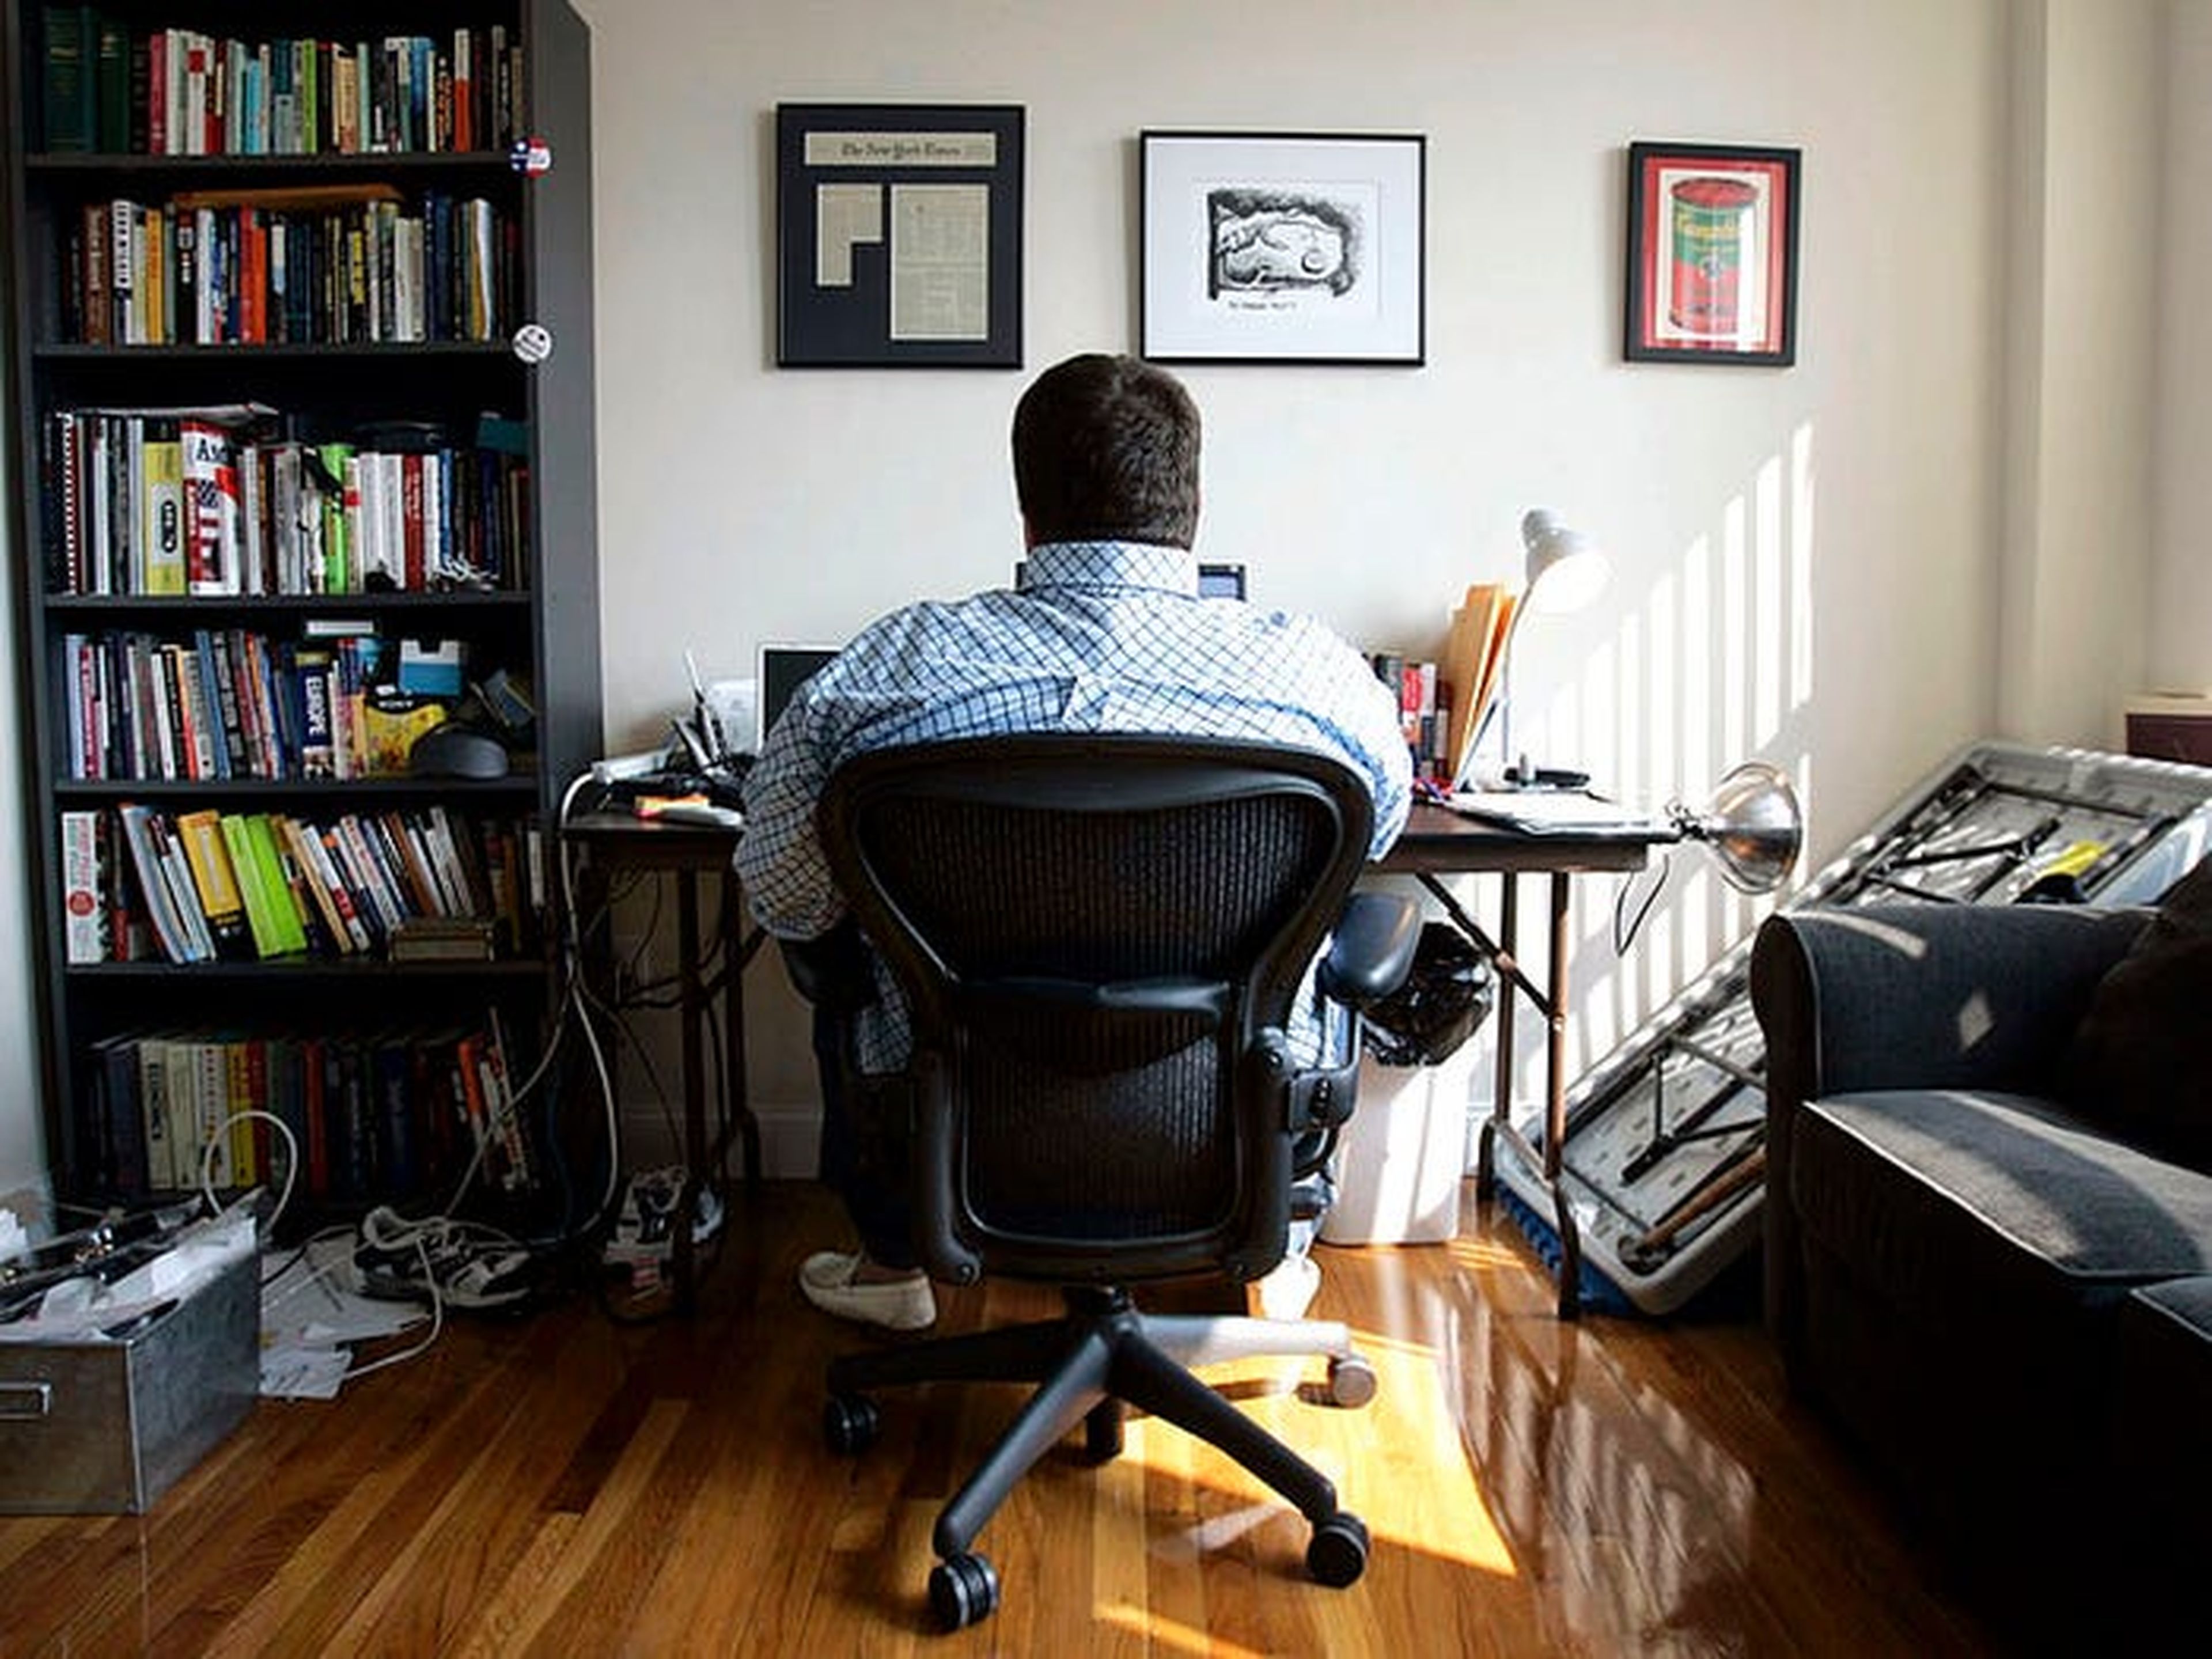 Tener un espacio dedicado al trabajo en casa te ayuda a evitar la sensación de que el trabajo se apodera de tu vida, tanto física como mentalmente.